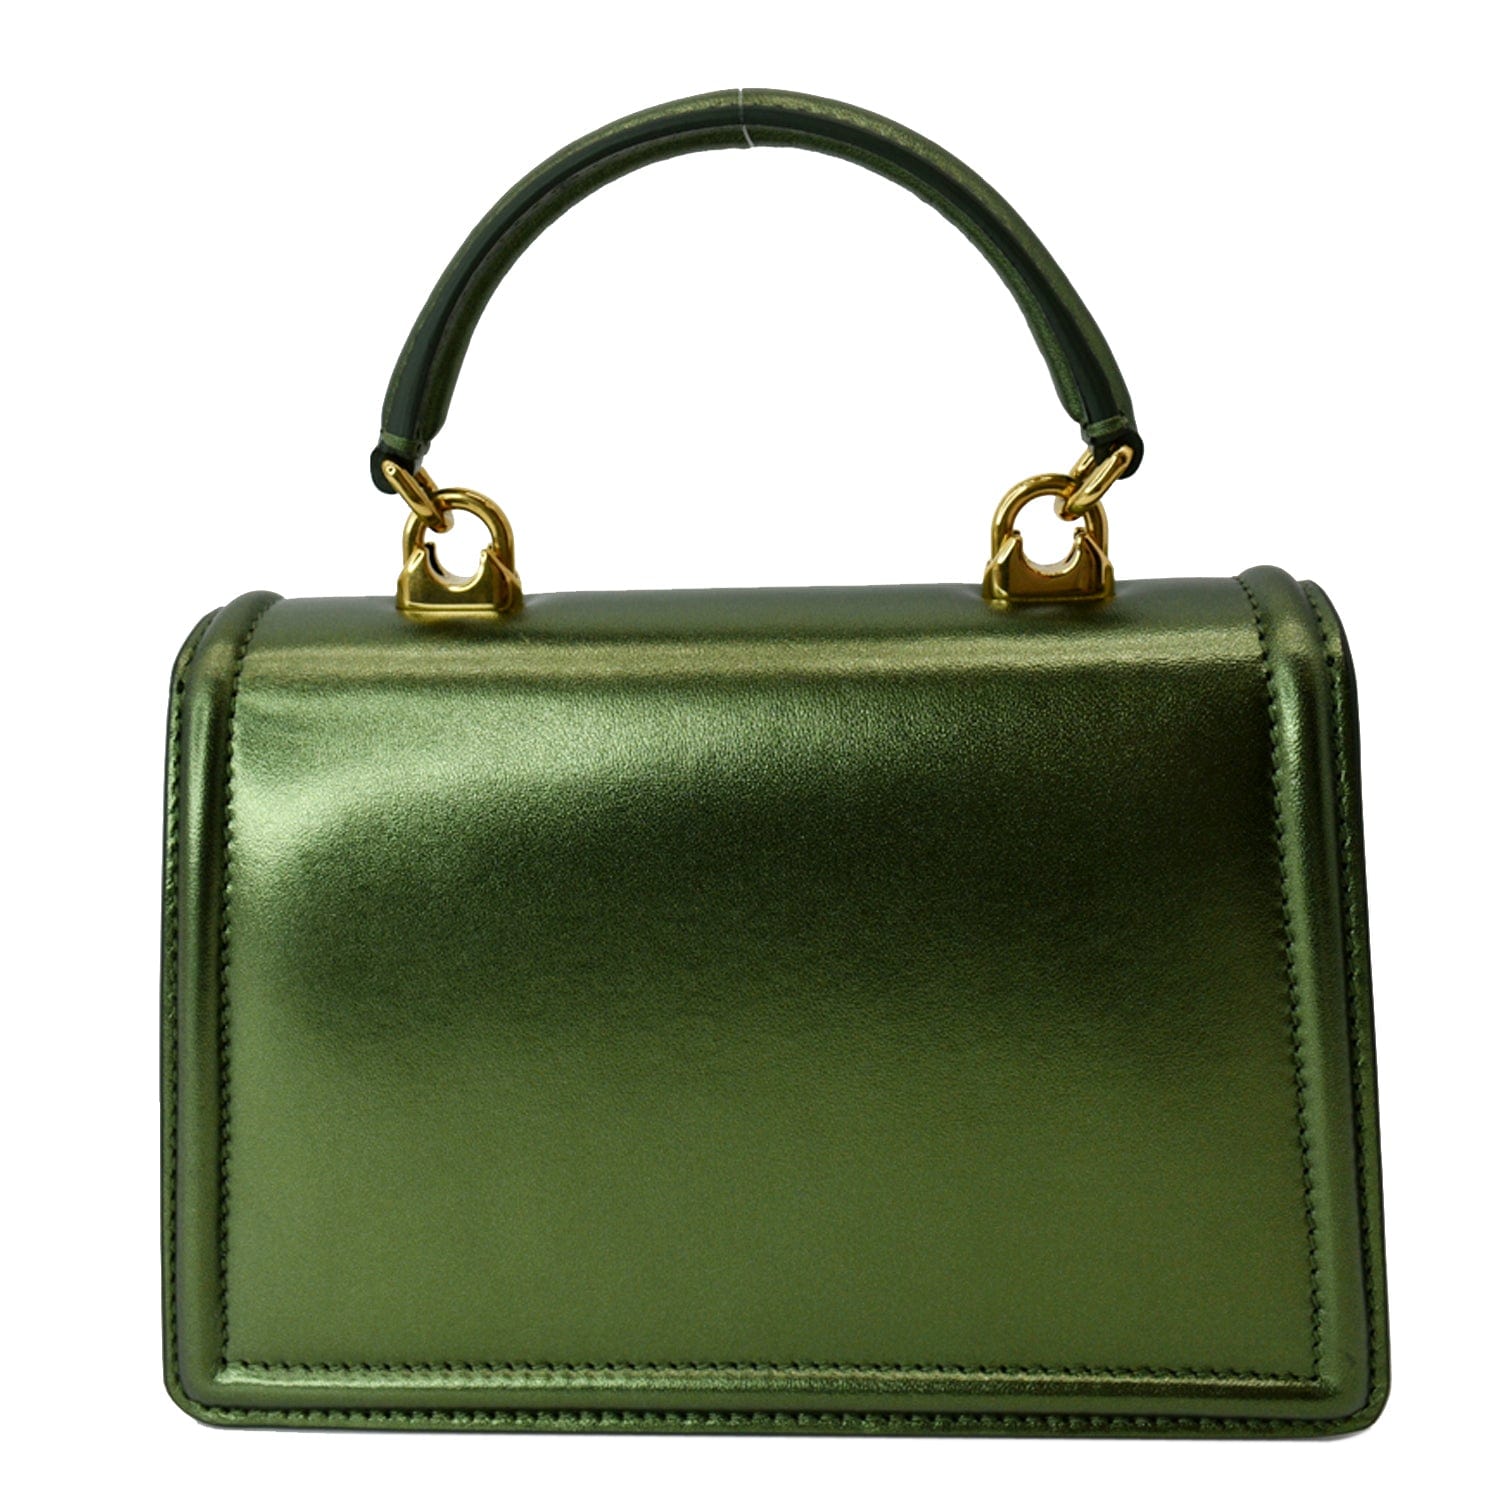 Dolce & Gabbana Small Satin Devotion Bag in Green